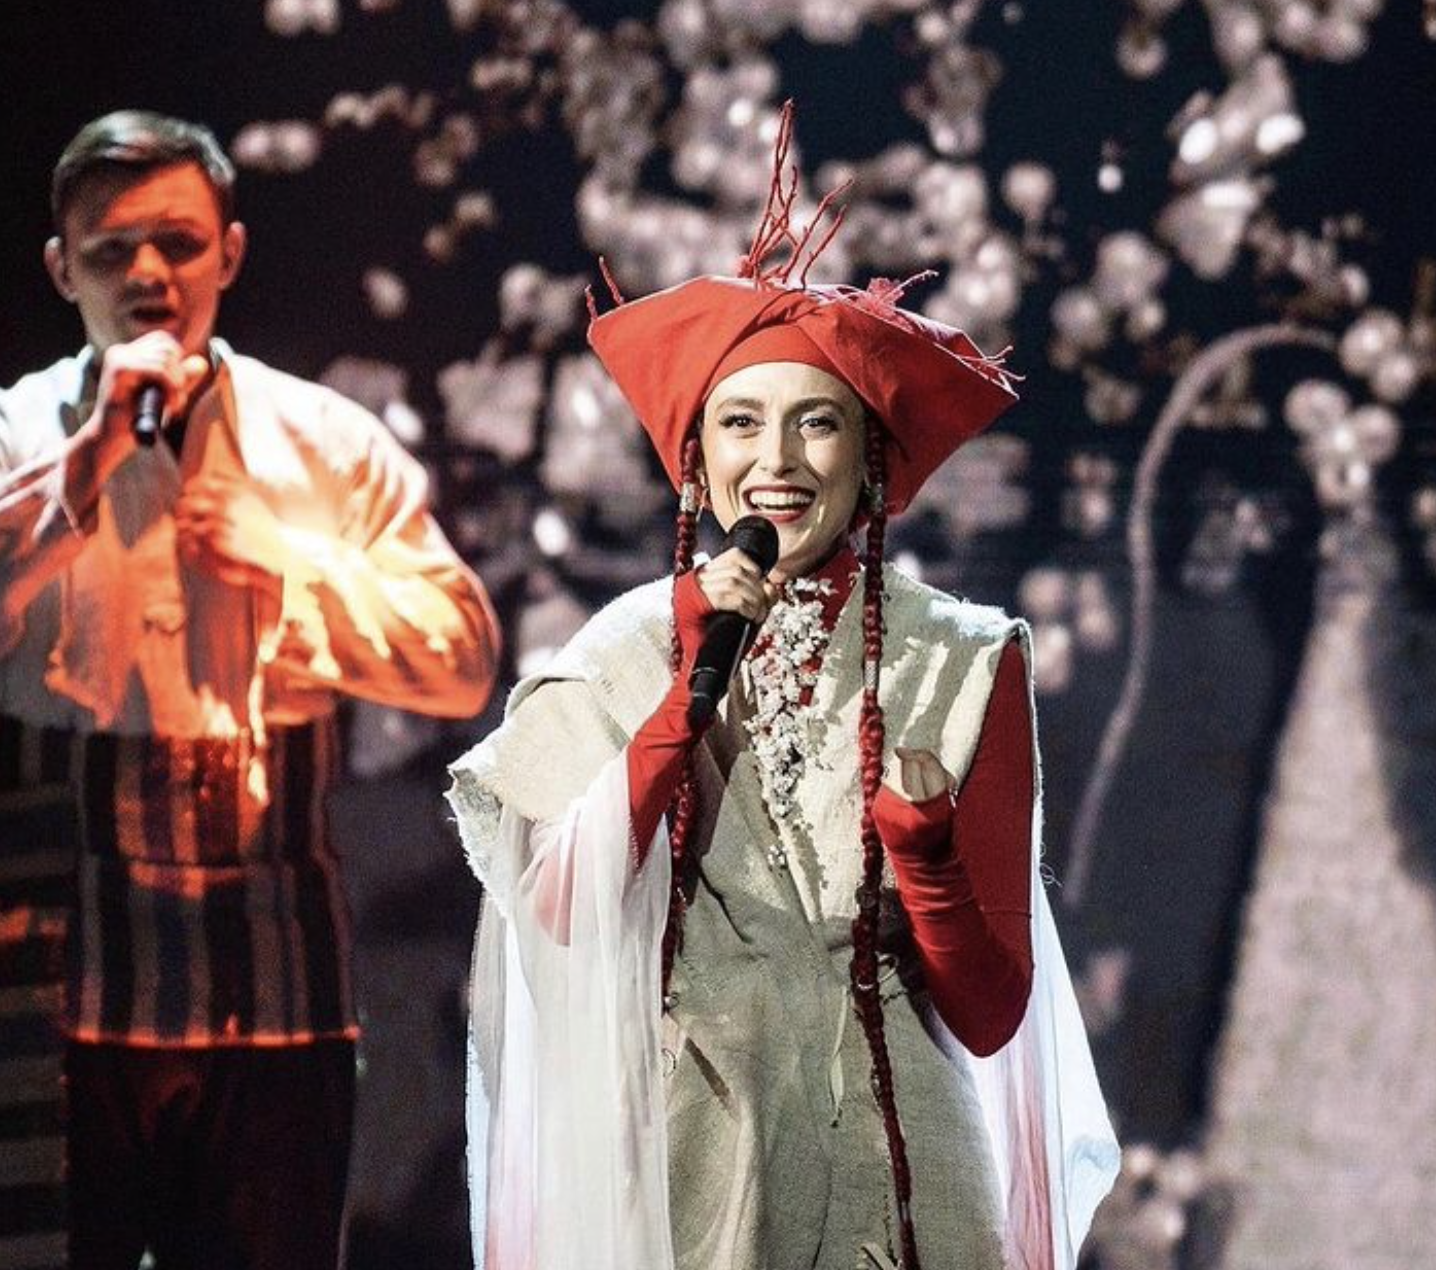 Концерты в России, нарушение закона и российские песни: скандал с Alina Pash набирает обороты